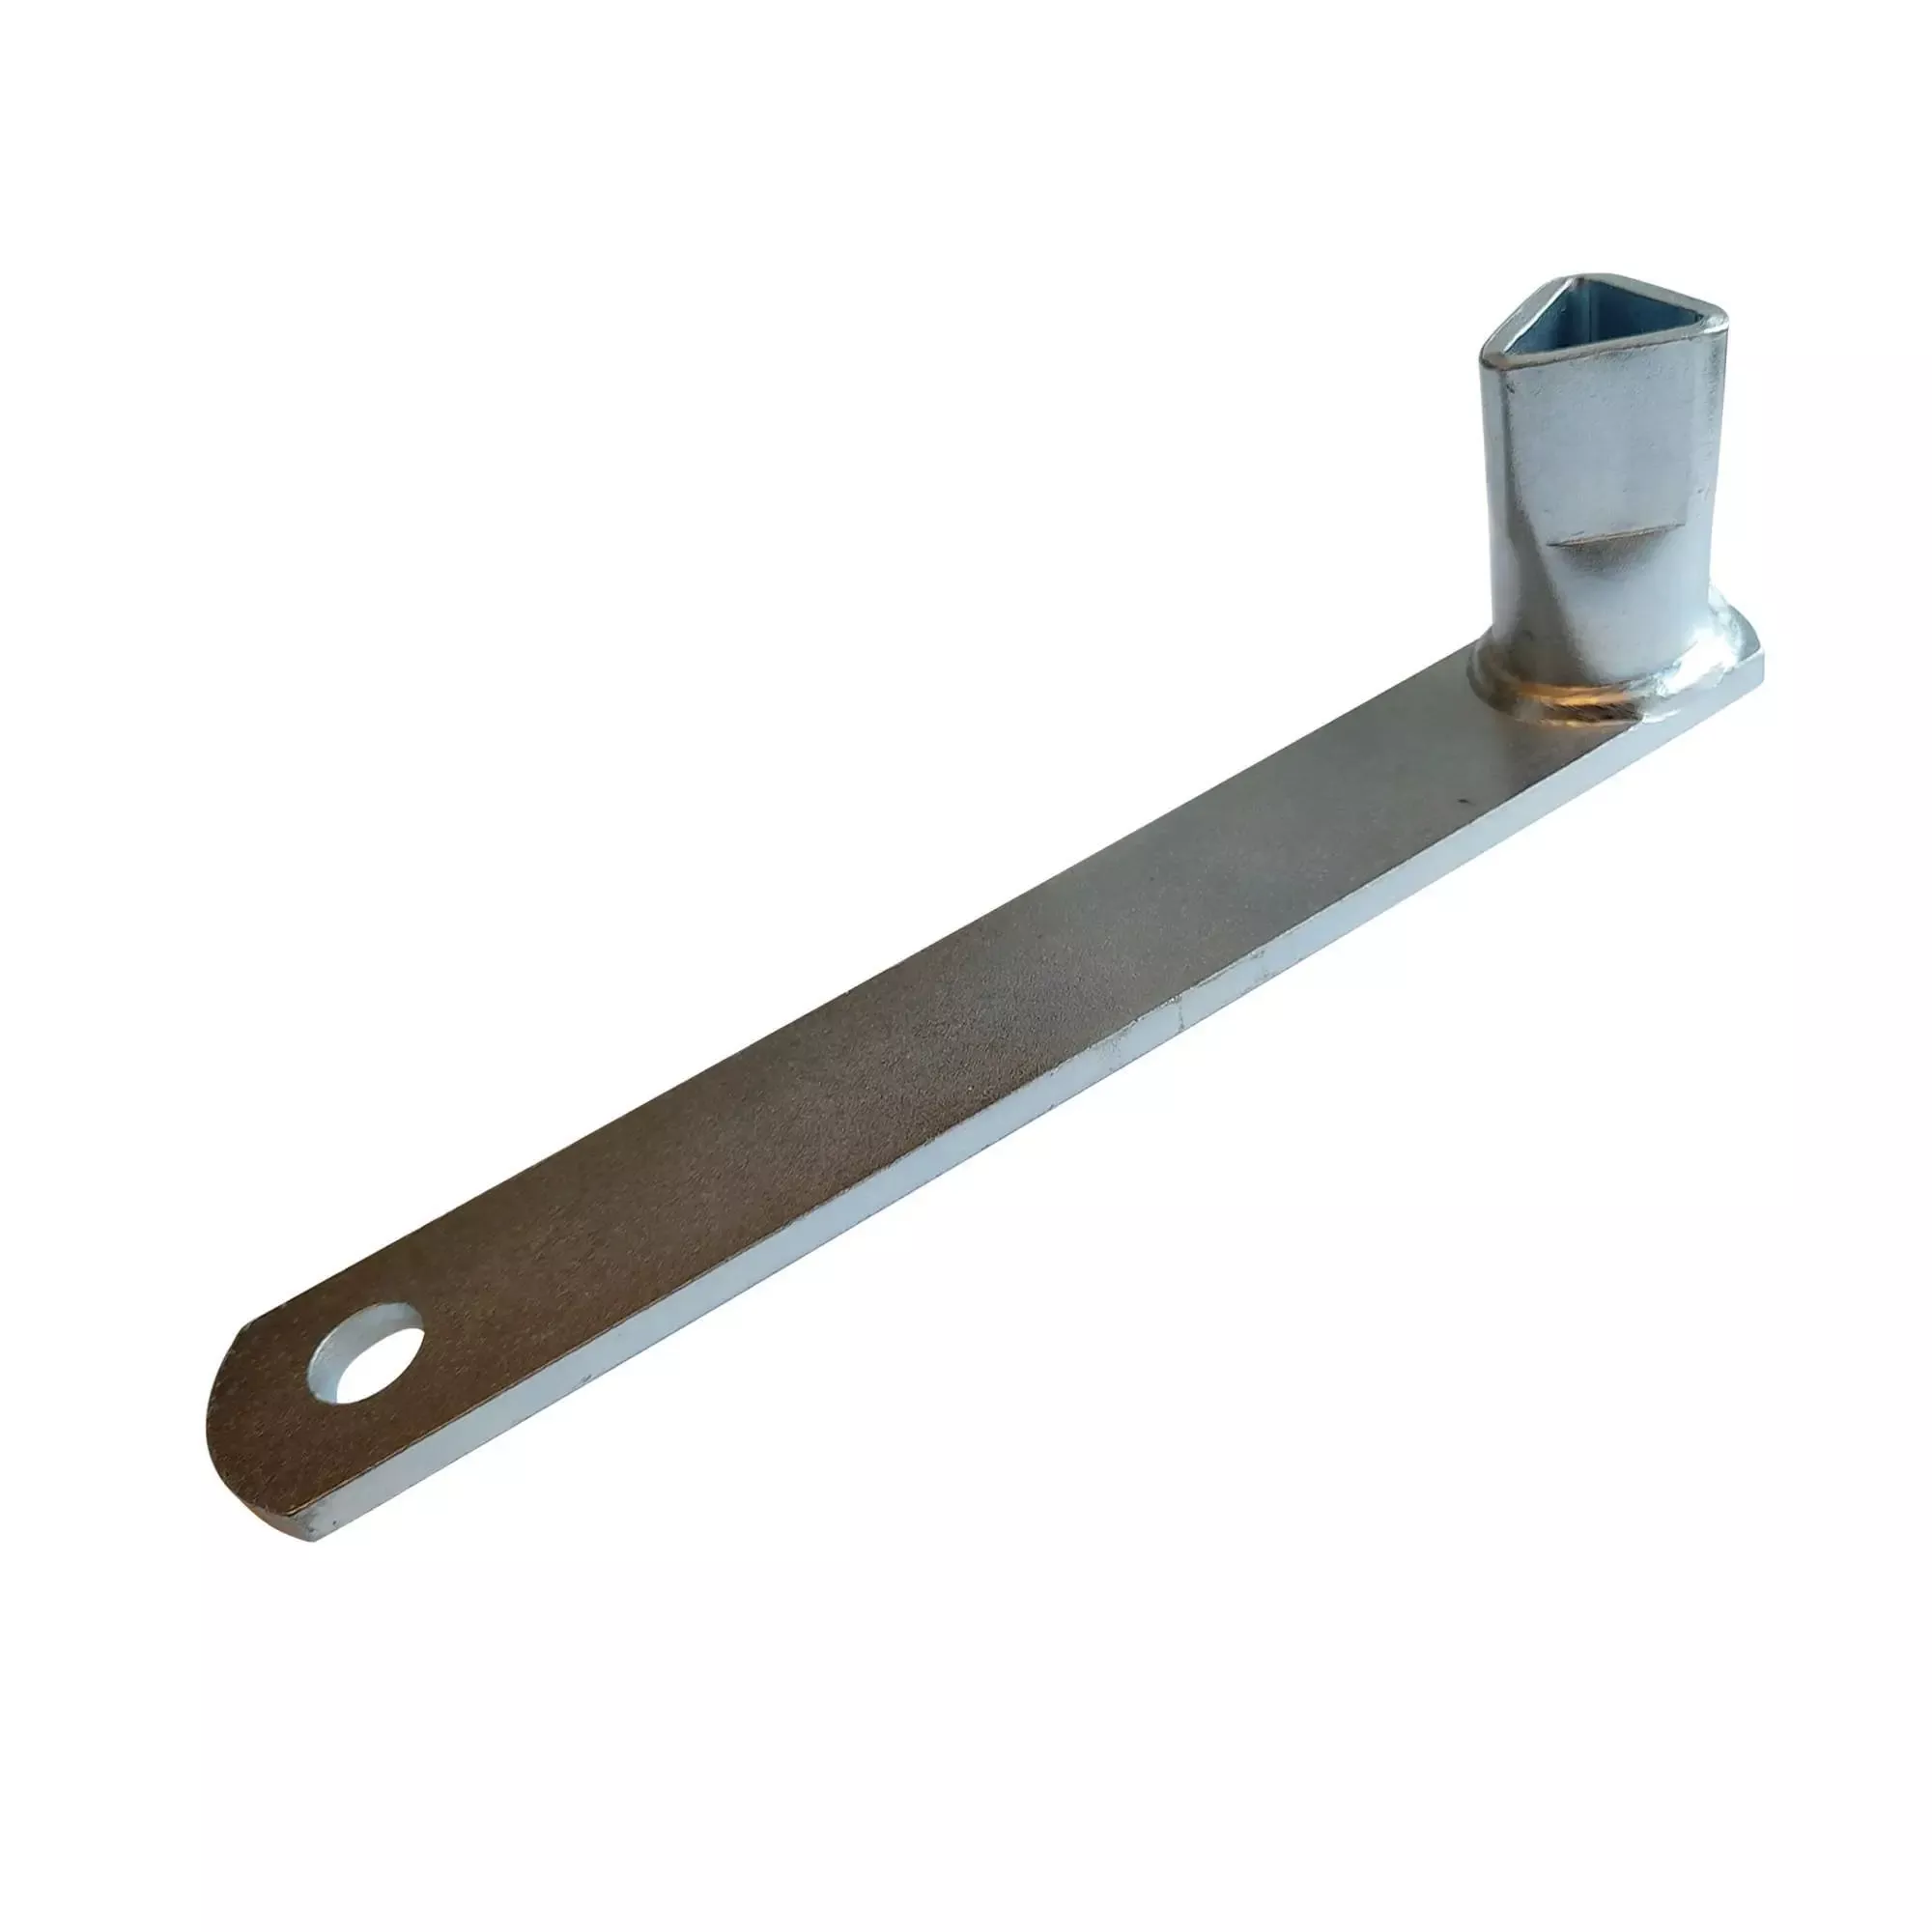 Dreikant-Kombi-Schlüssel aus Temperguss, Länge: 185 mm, Seitenlänge ca. 19 mm +/- 1 mm, DIN 3223